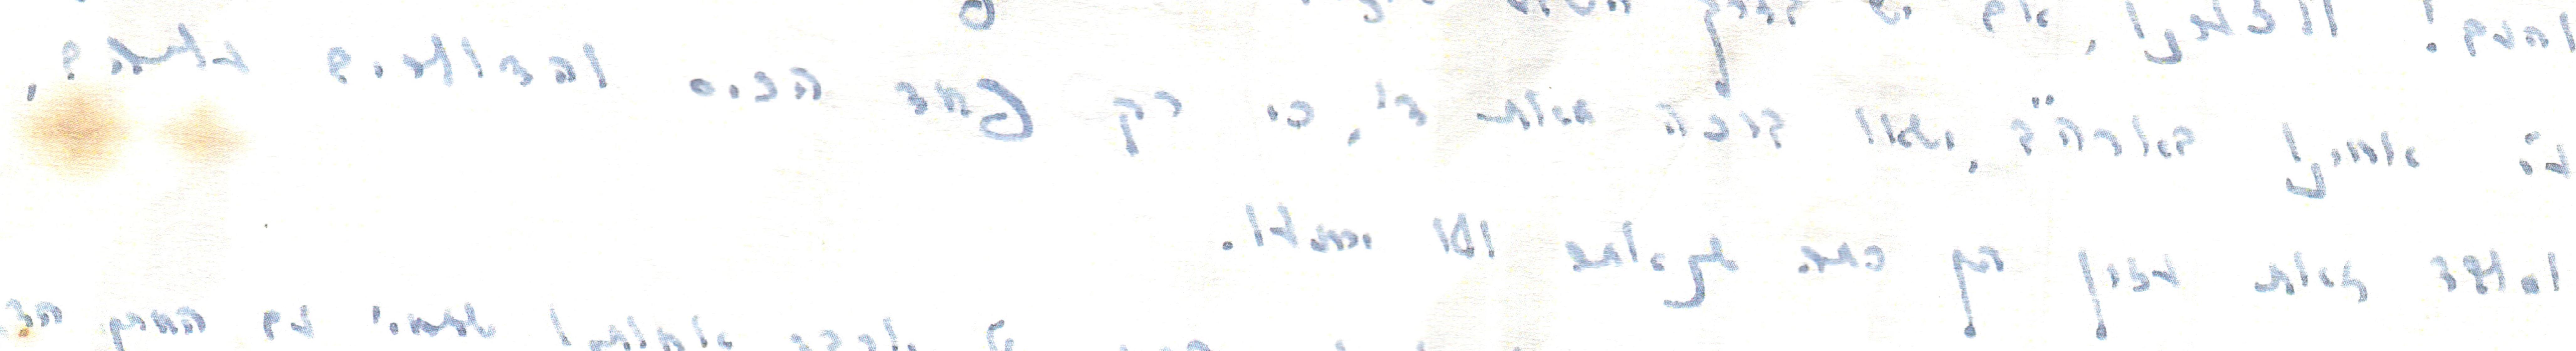 מכתב לרש''ד וואלקין 001 (1).jpg